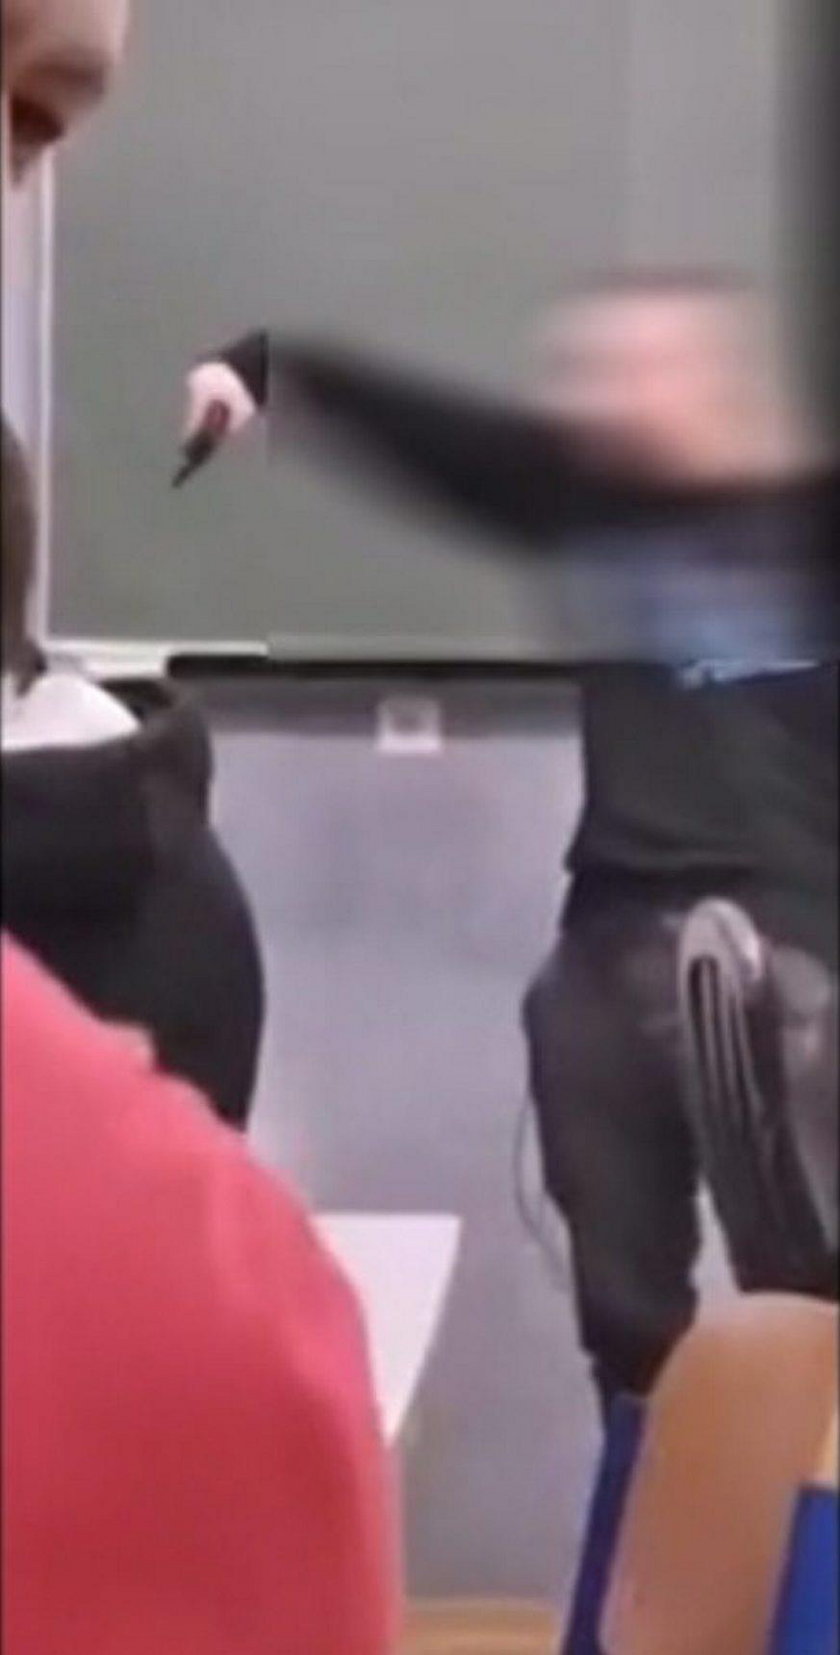 Szokujące sceny w szkole. Uczeń przystawił nauczycielowi broń do głowy